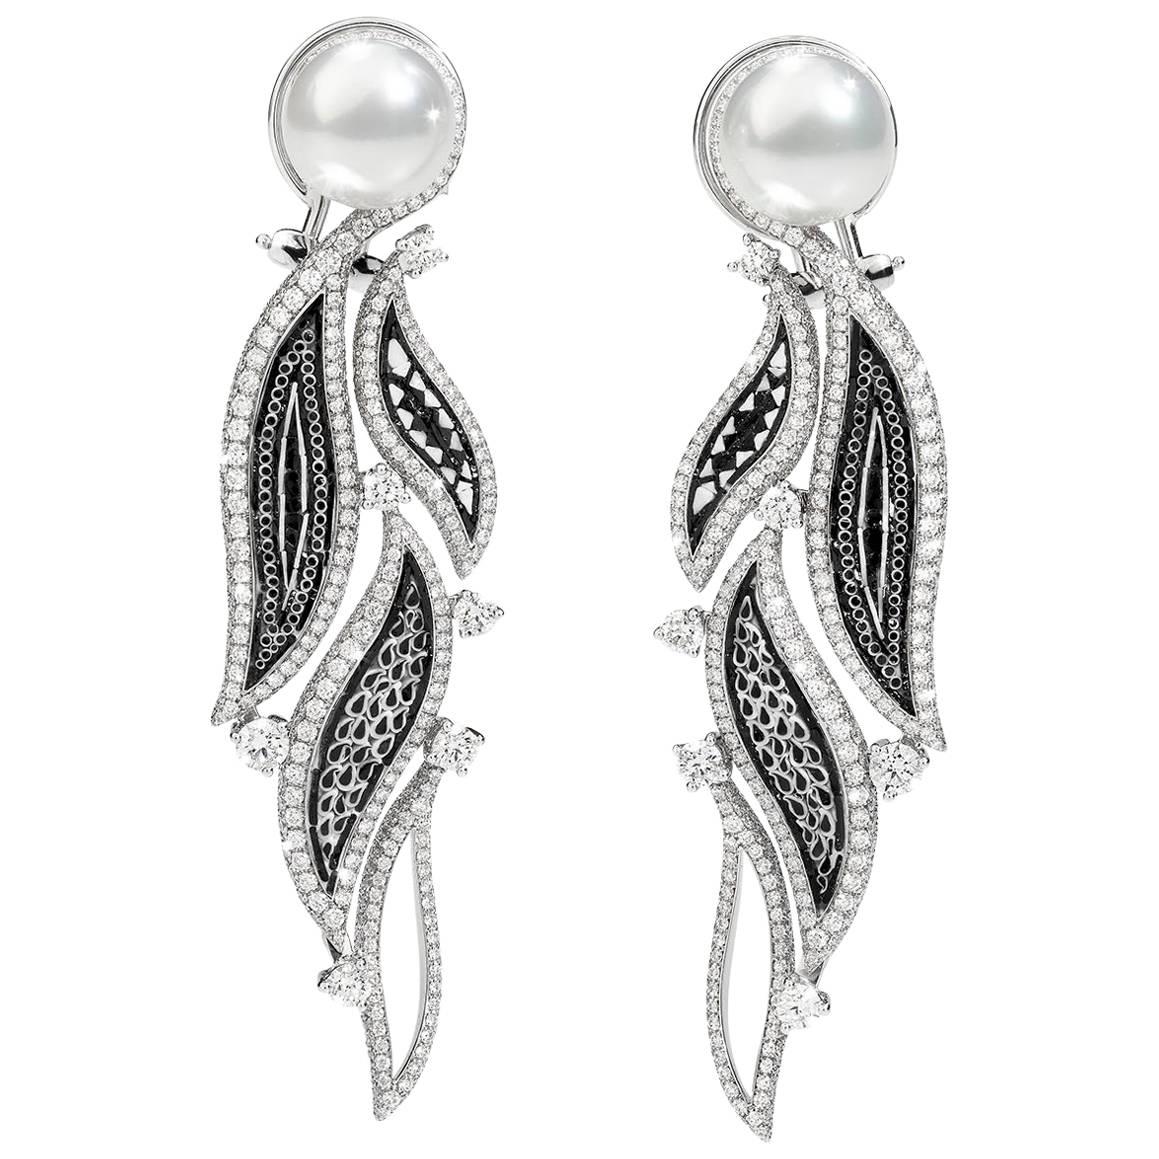 Boucles d'oreilles élégantes en or blanc, diamants blancs et perles, décorées à la main avec de la micro-mosaïque